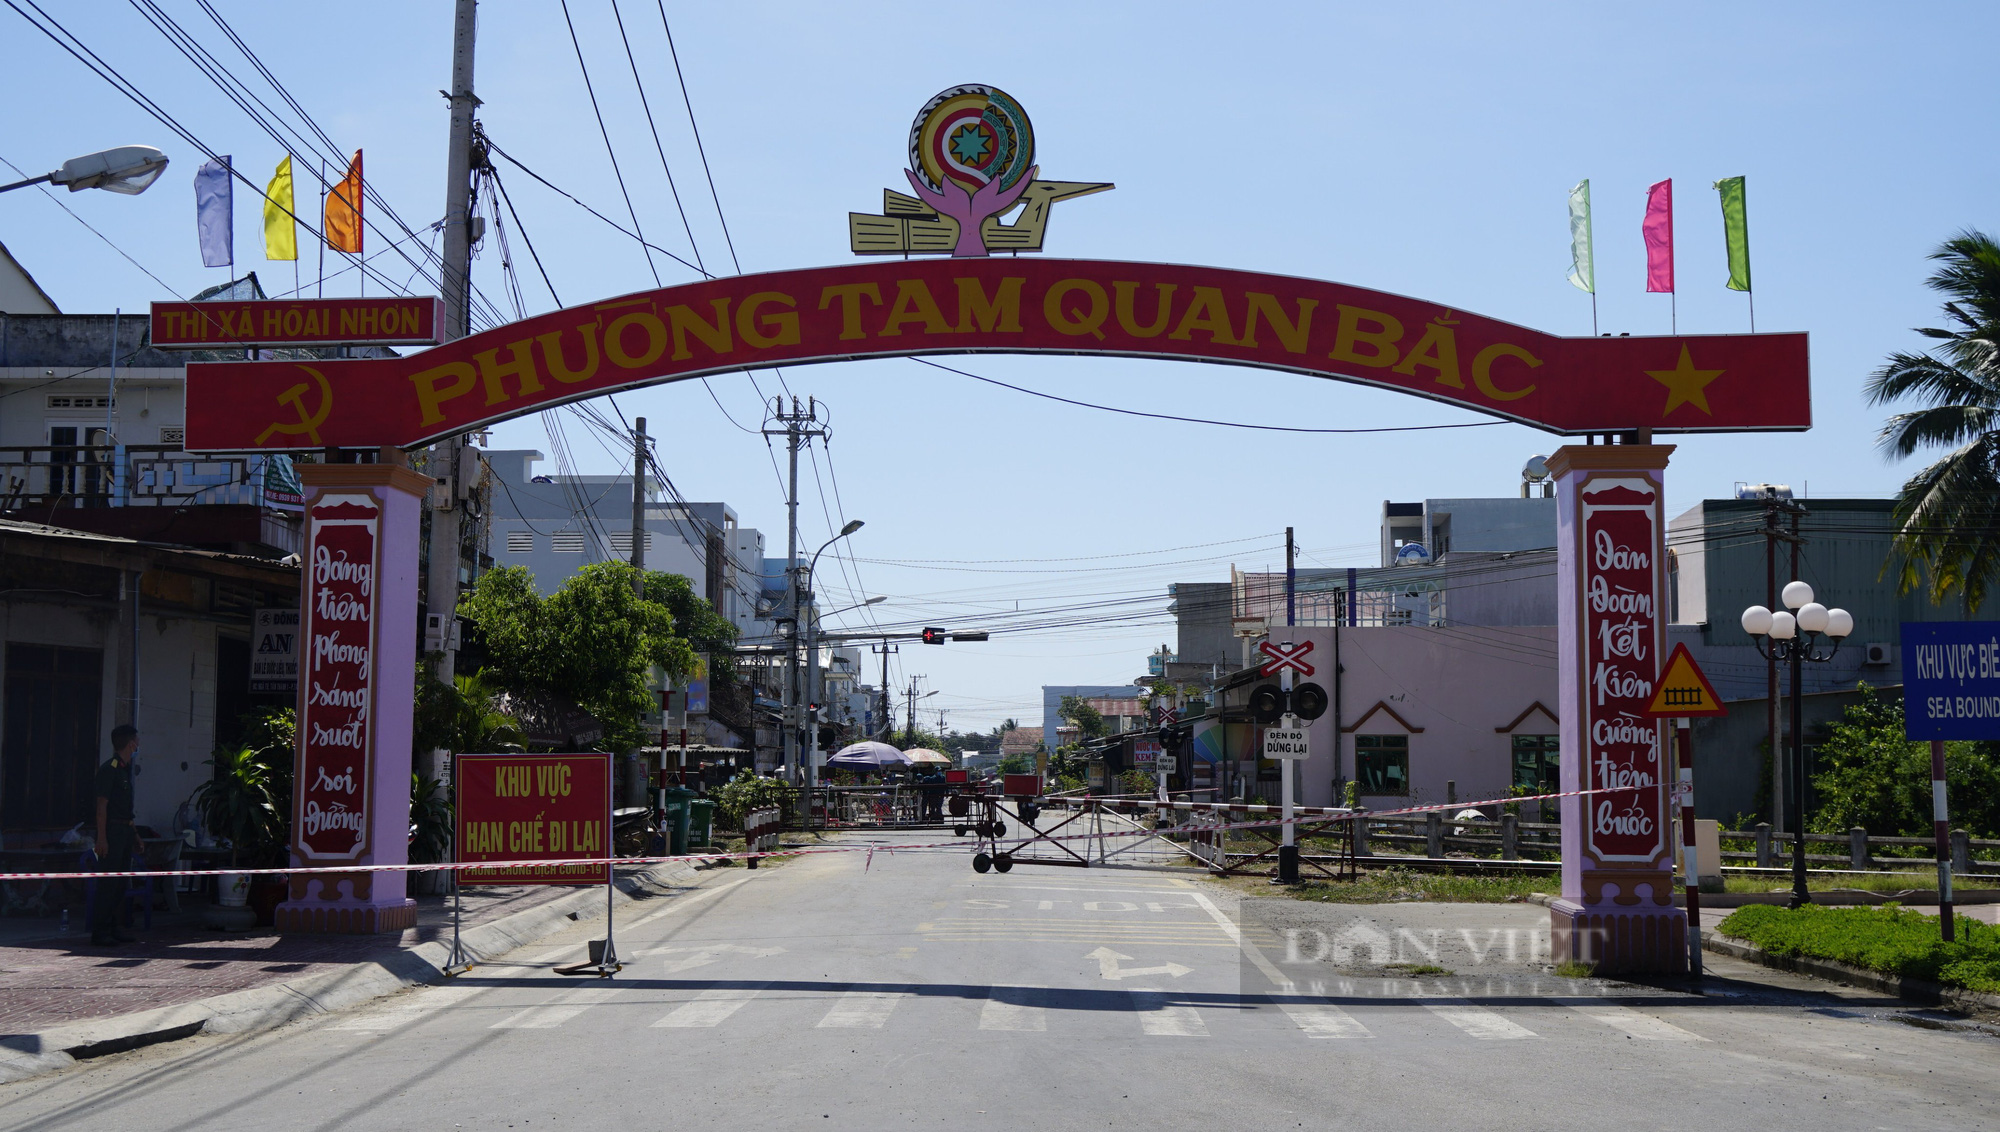 Đăng “bậy” trên Facebook, người đàn ông ở Bình Định bị công an xử lý - Ảnh 1.